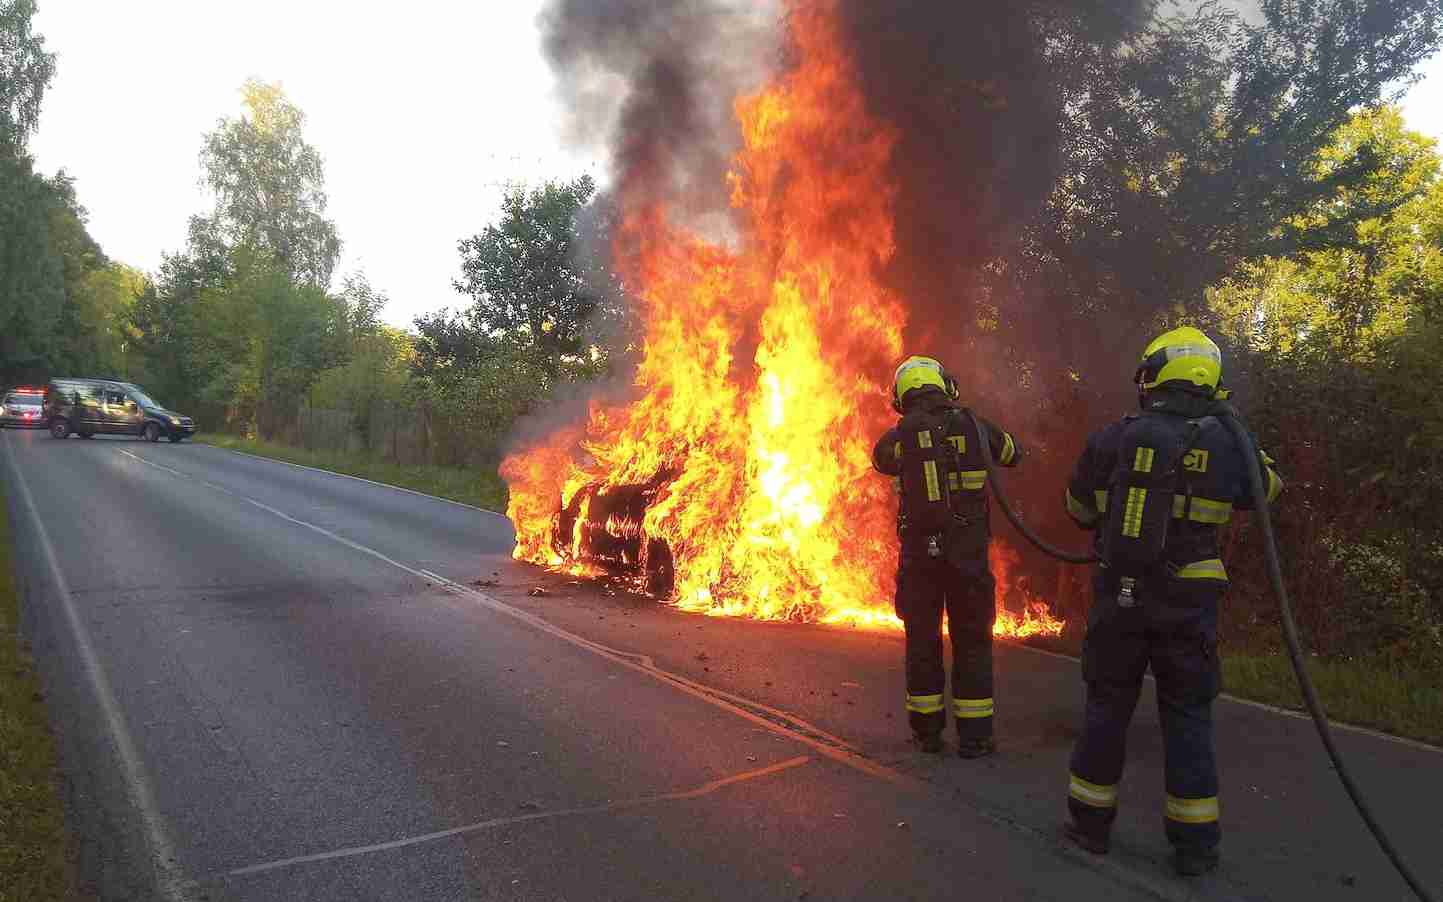 FOTO: U Tisové na Sokolovsku hořelo auto. Na vině je zřejmě technická závada